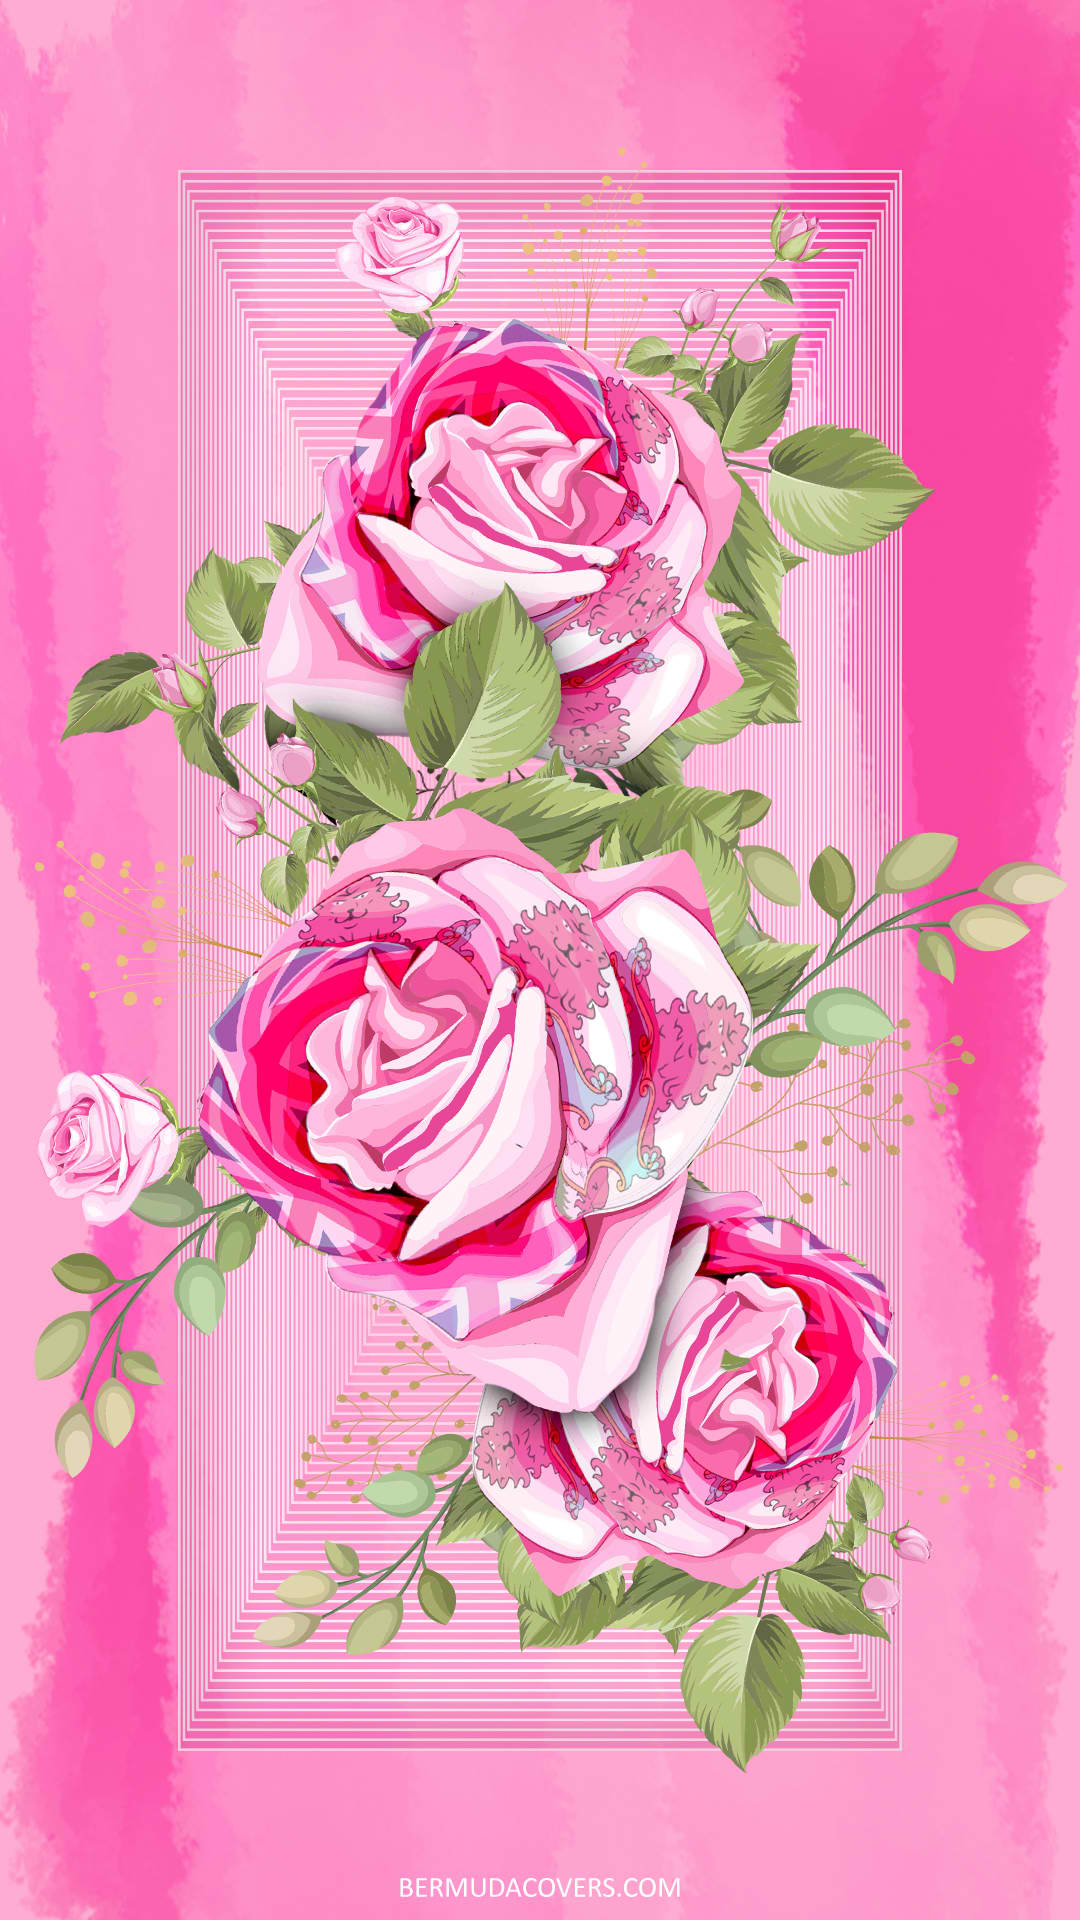 Roses-With-Bermuda-Flag-Drawing-social-media-phone-wallpaper-437437483-2